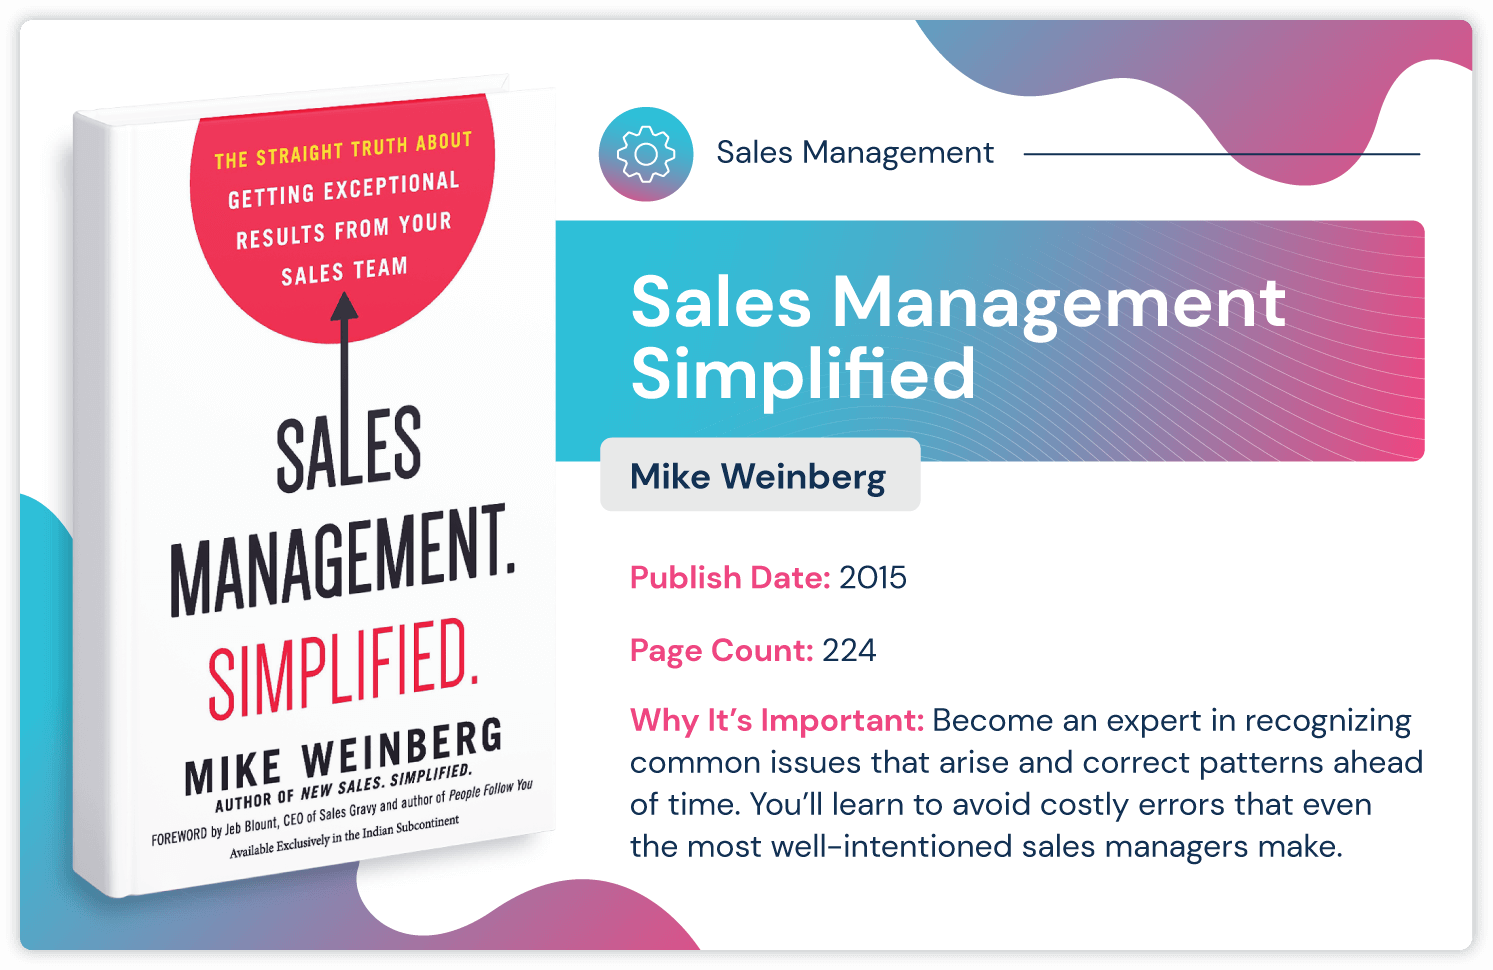 销售管理书籍，名为“由 Mike Weinberg 简化的销售管理，旨在避免代价高昂的销售管理错误。2015 年出版，长达 224 页